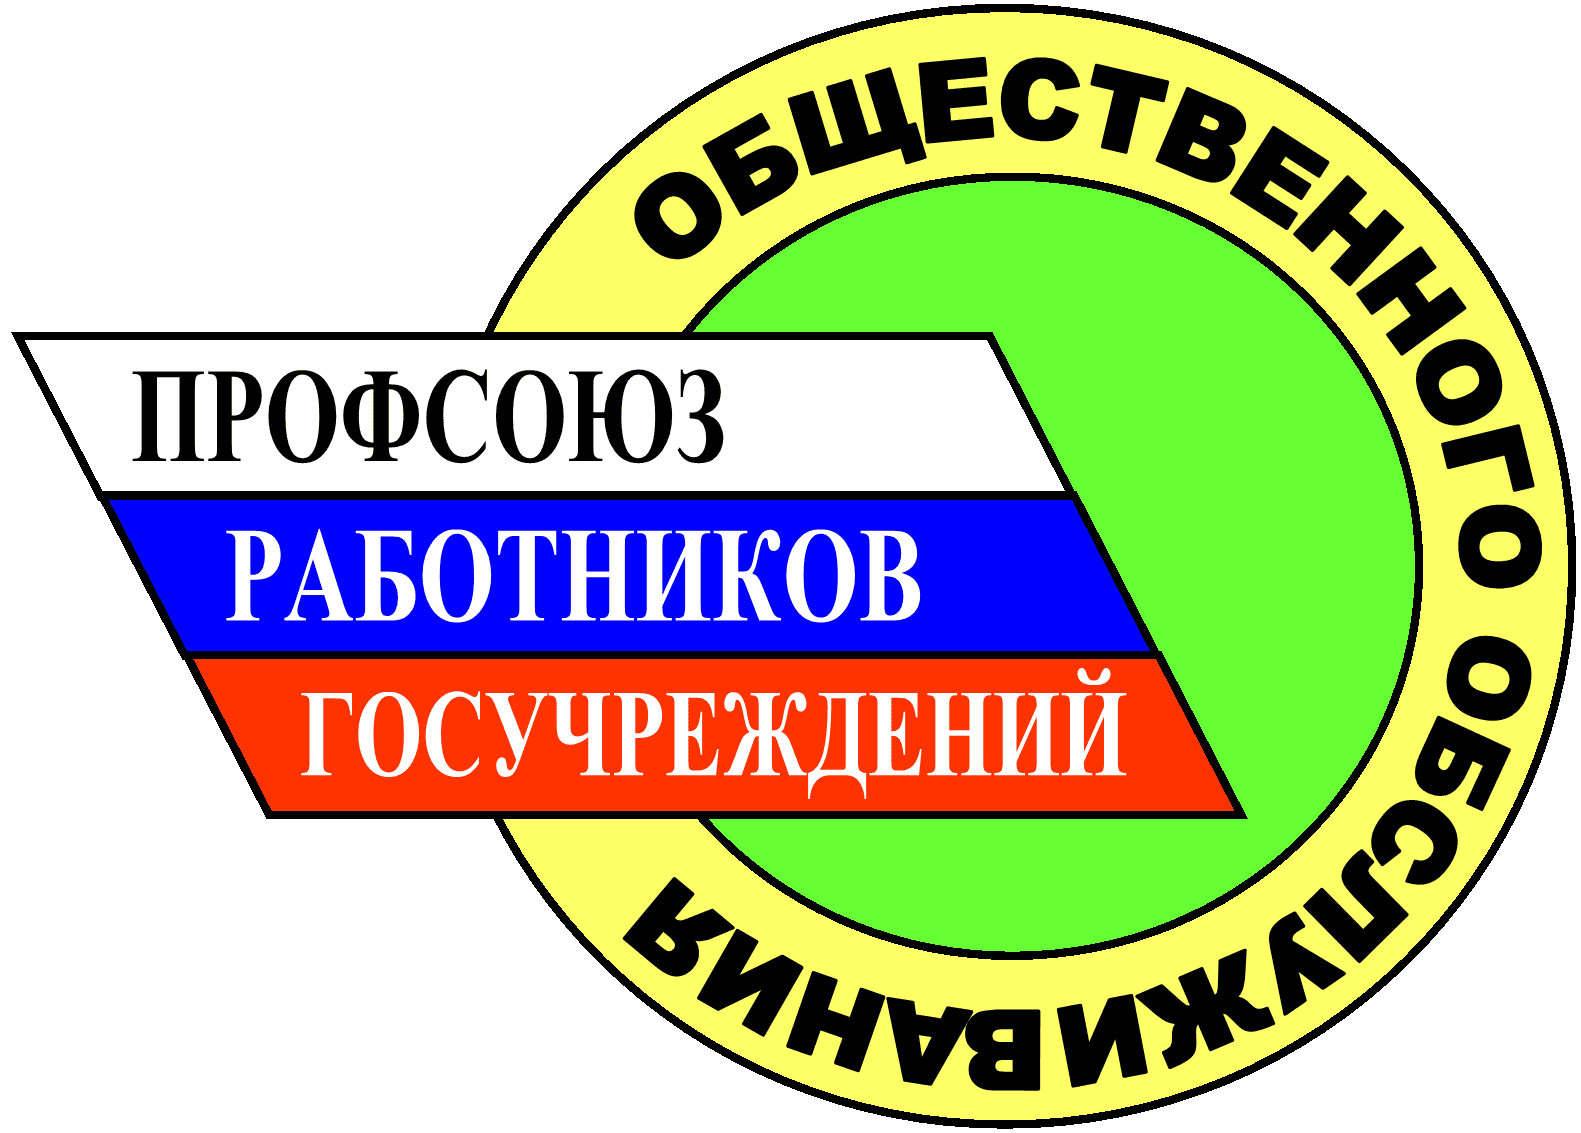 Местная профсоюзная организация. Профсоюз. Значок профсоюза. Профсоюз работников. Логотип профсоюзной организации.